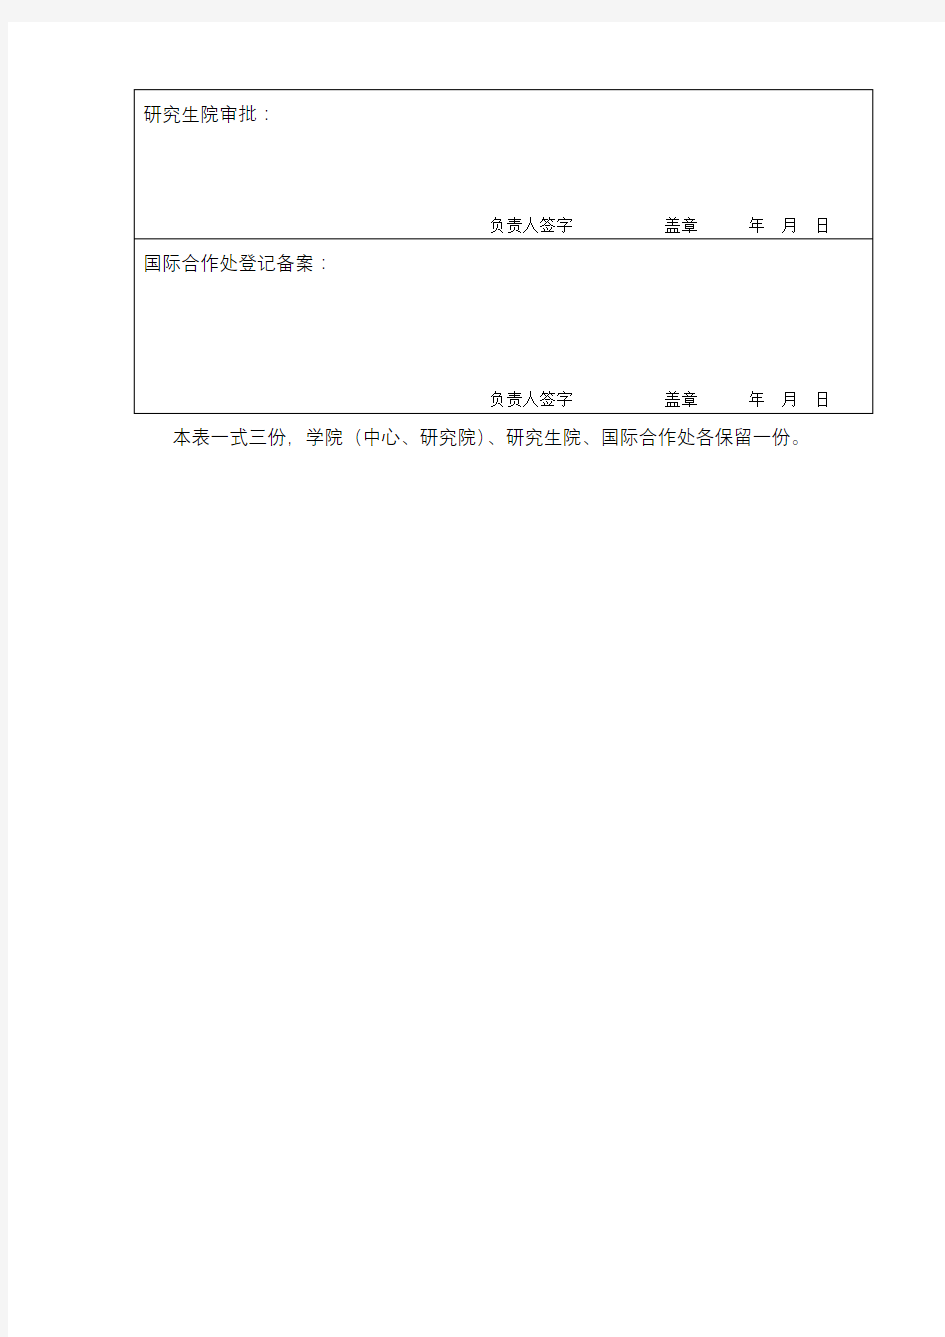 XX大学在籍研究生赴境外孔子学院任汉语教师志愿者申请表【模板】